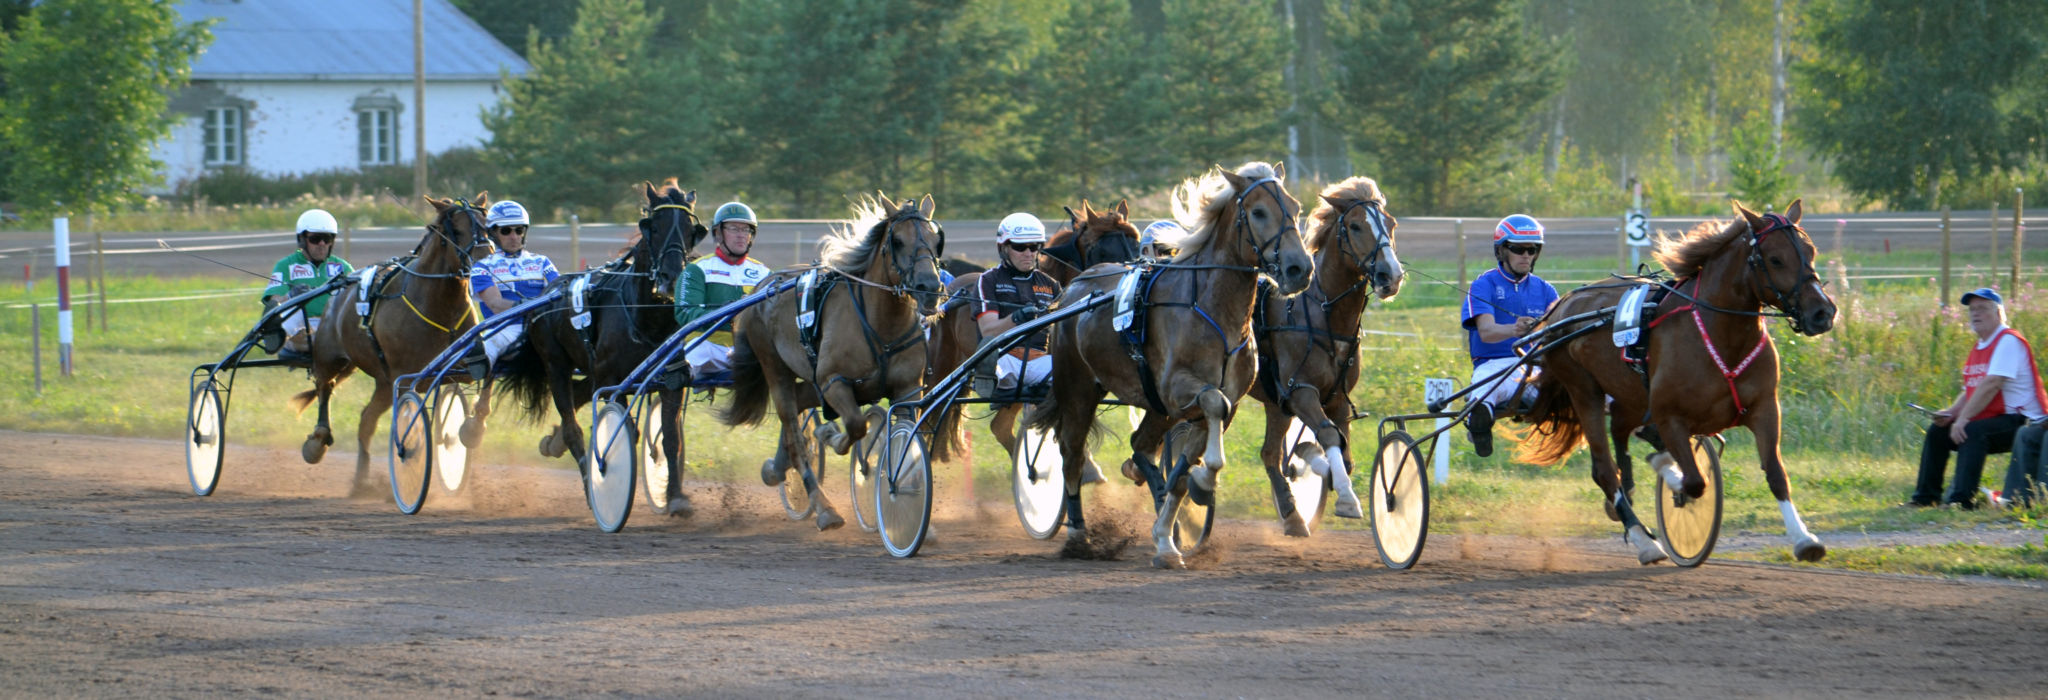 Loviisan ravit - Lovisa trav - Trotting races in Loviisa